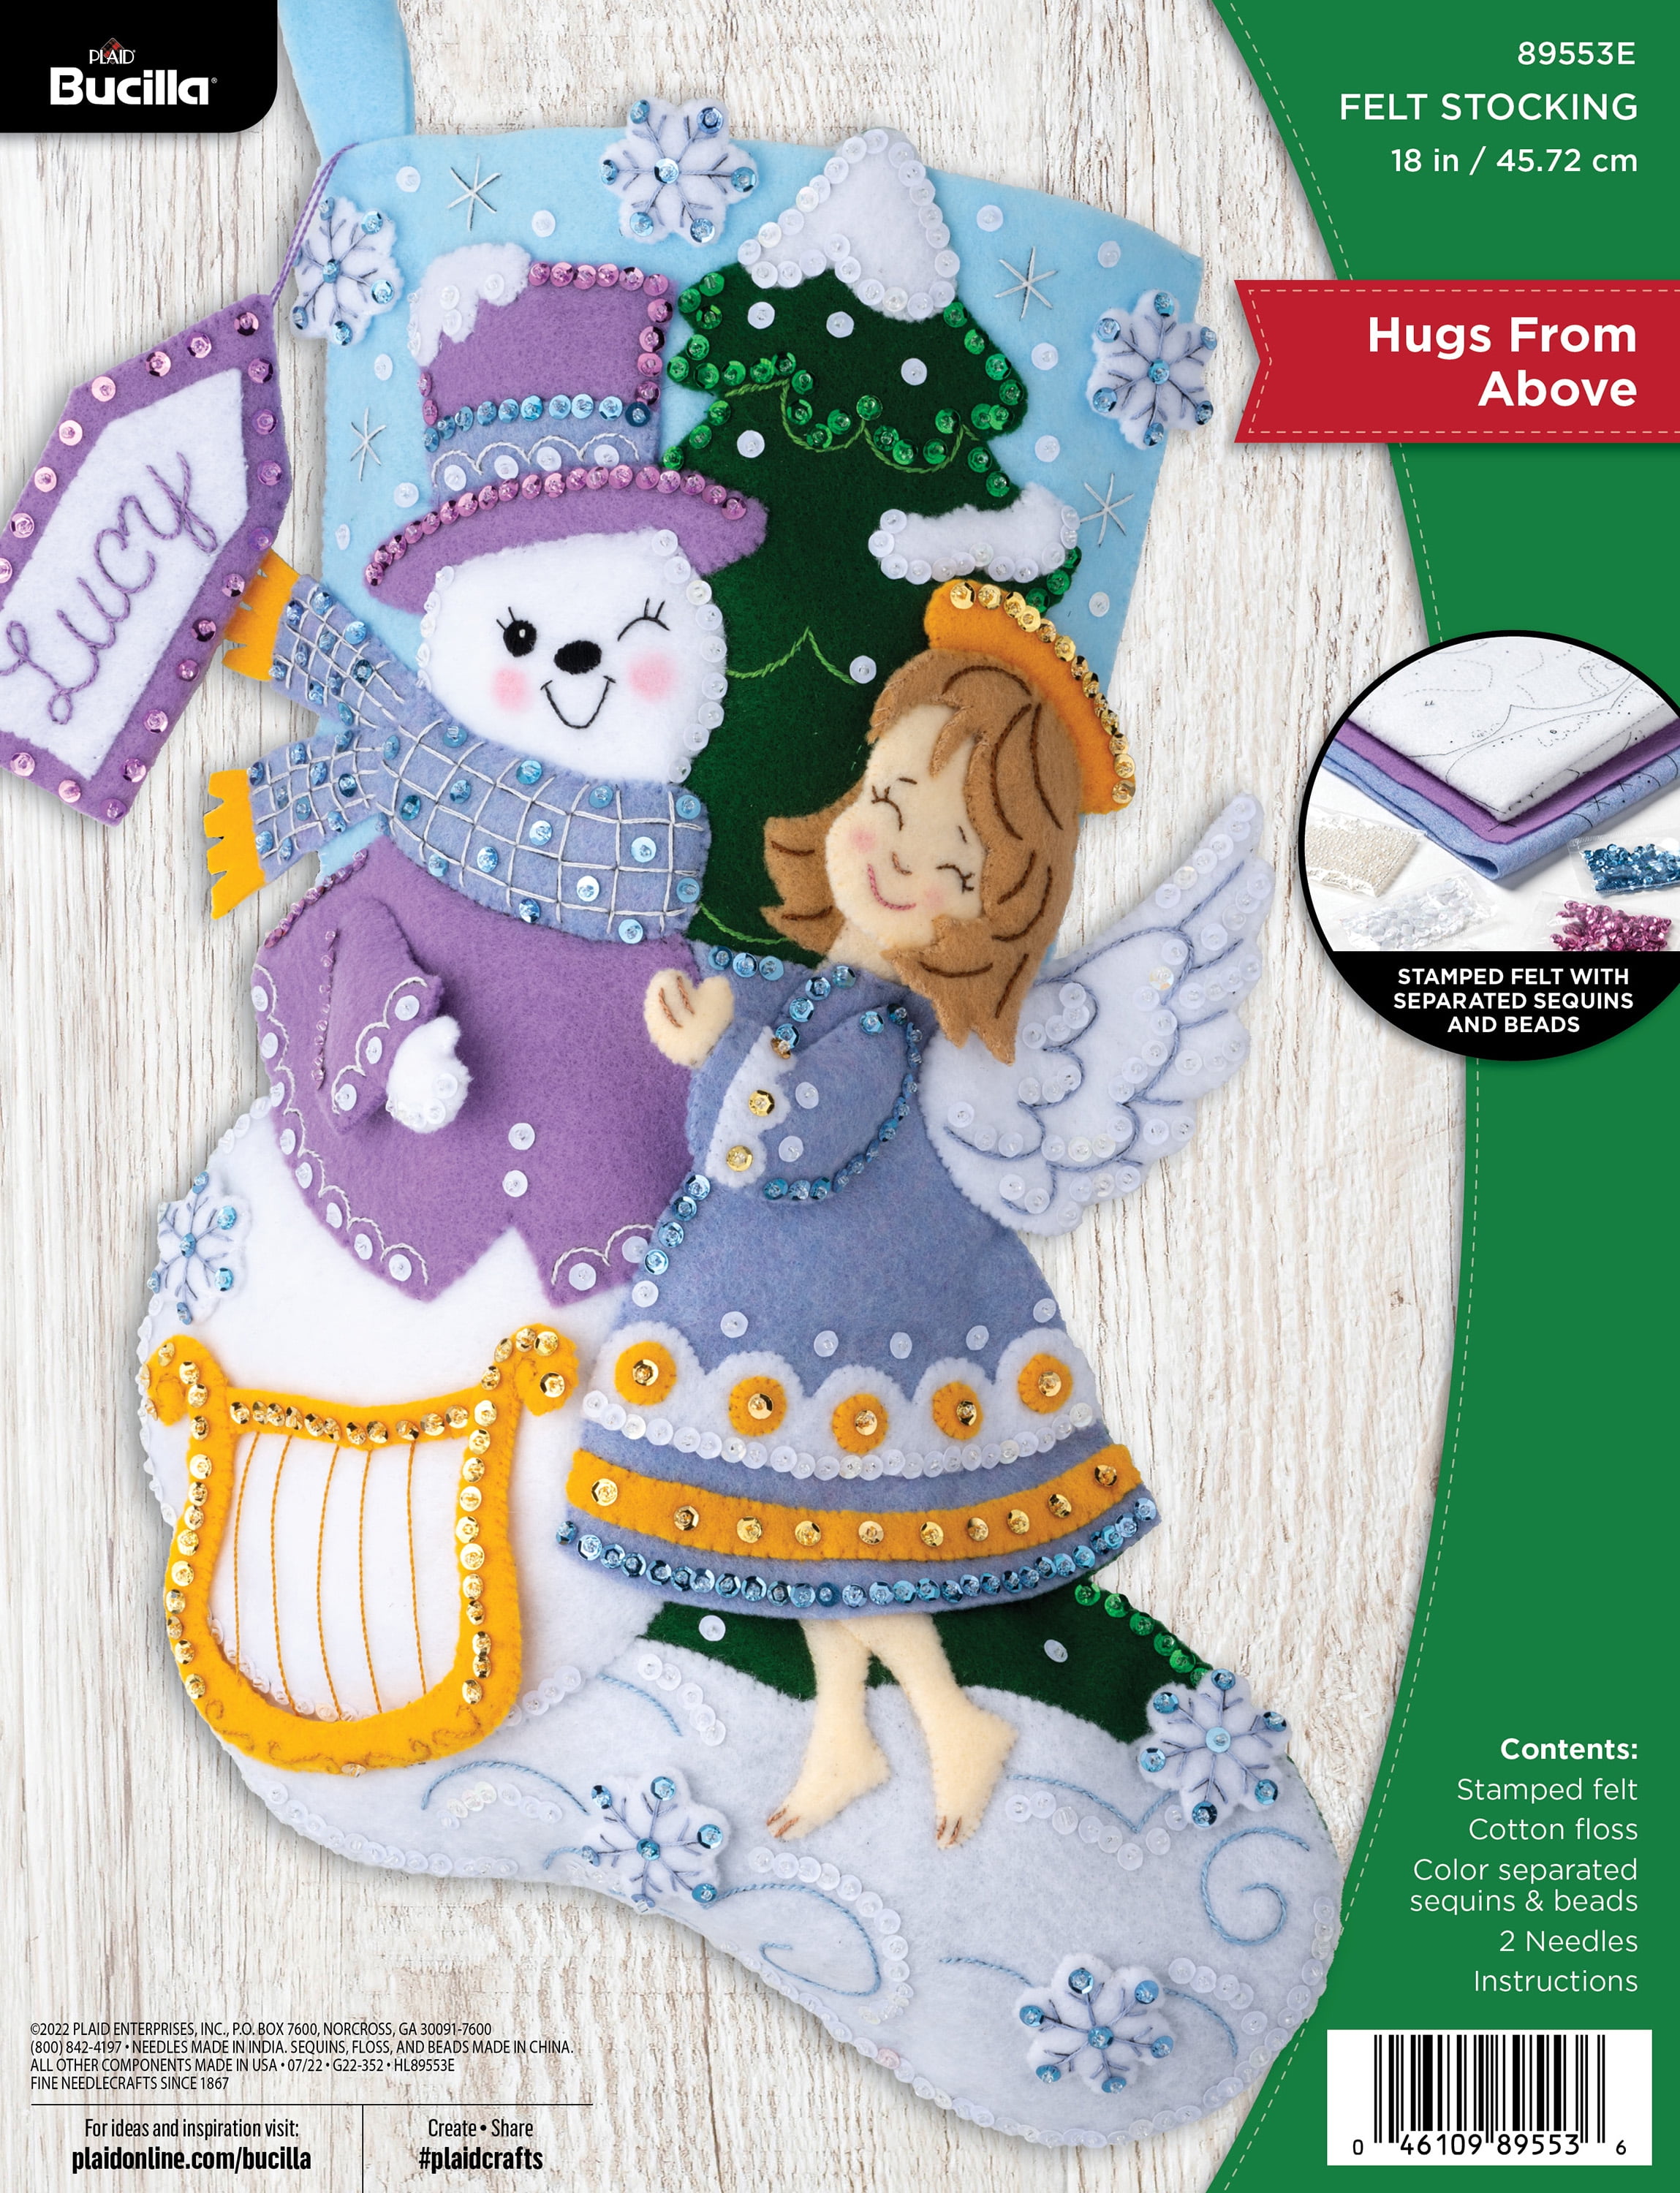 Shop Plaid Bucilla ® Seasonal - Felt - Stocking Kits - Season's Greetings -  89618E - 89618E